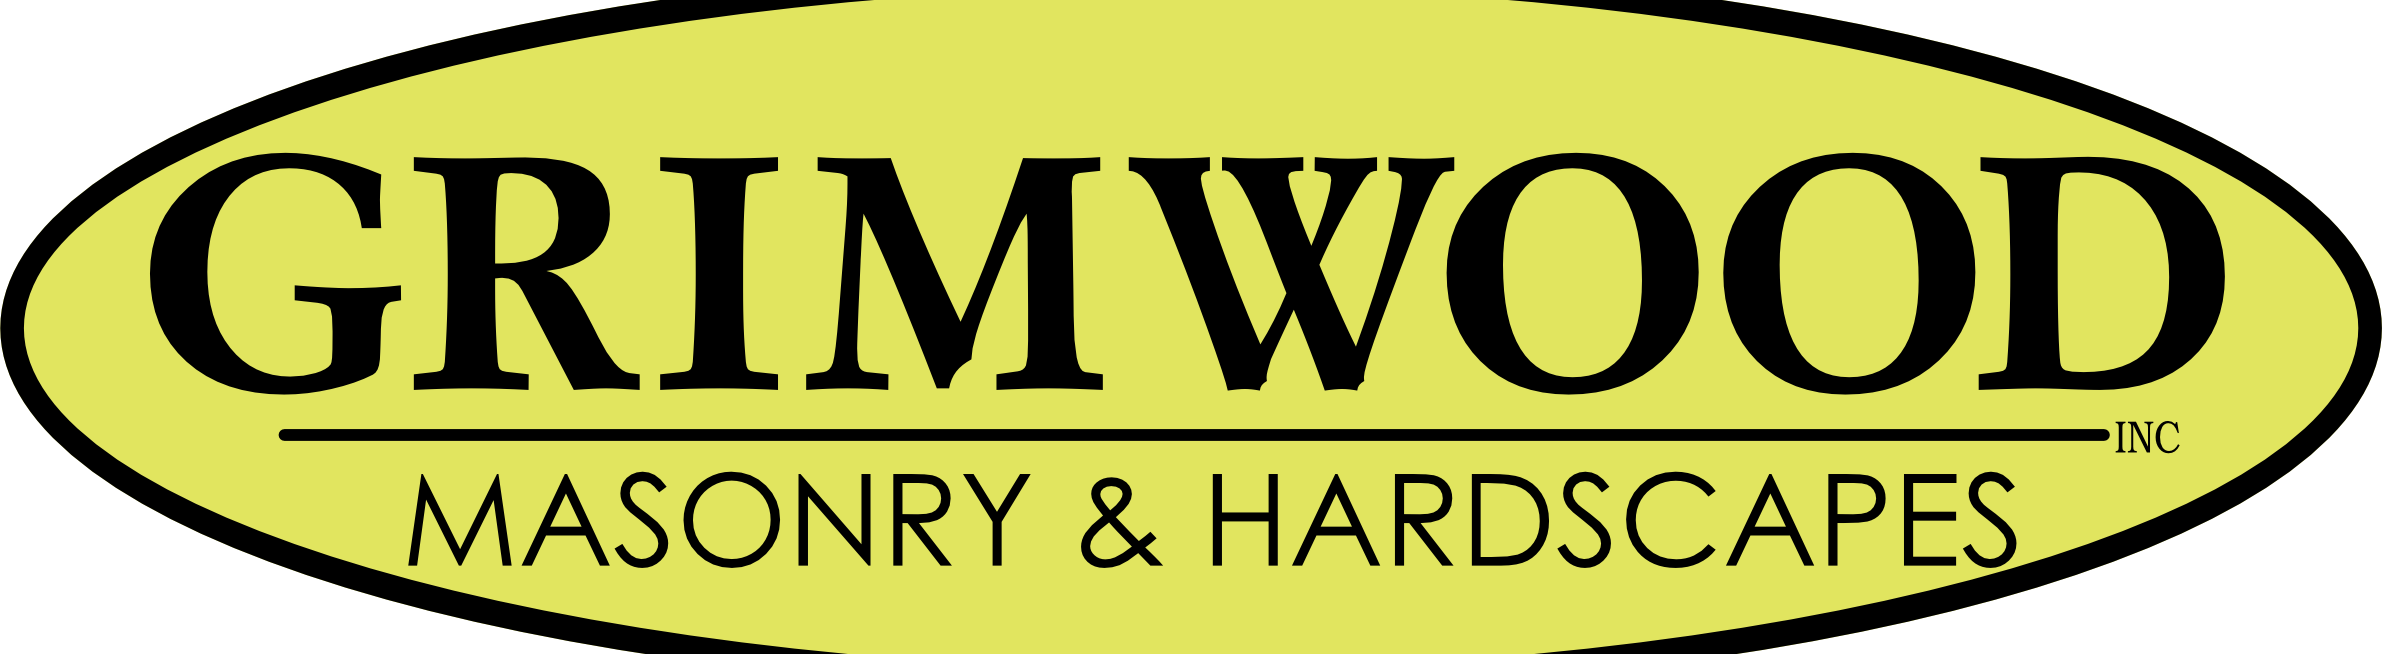 Grimwood Masonry and Hardscapes Inc.